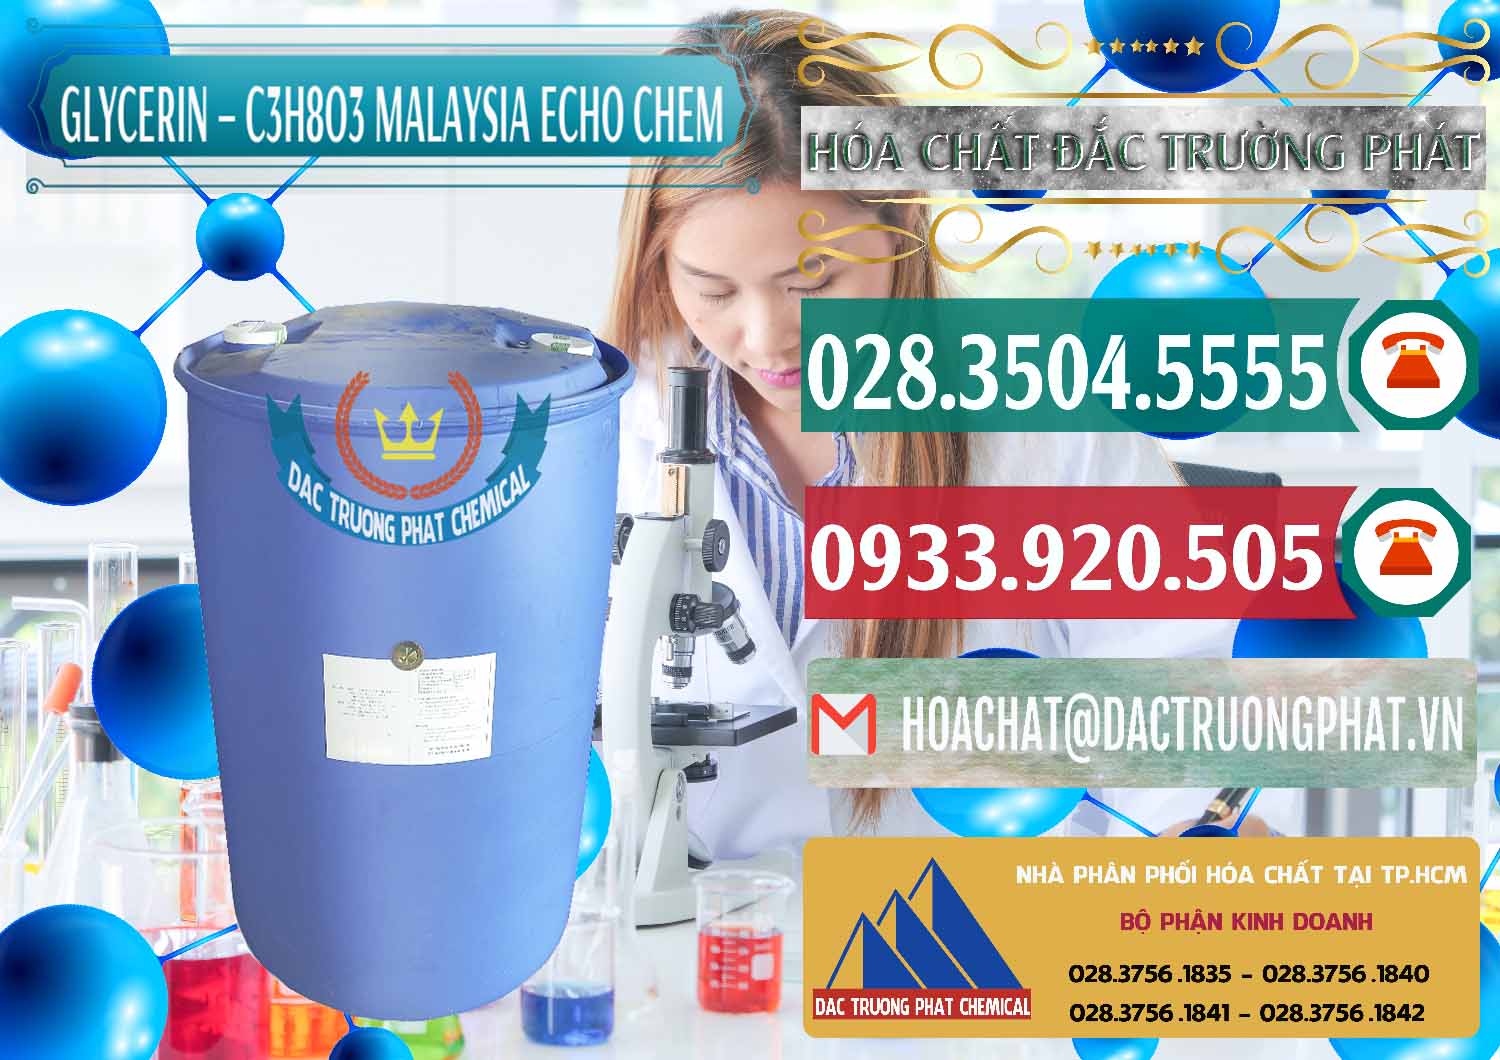 Cty kinh doanh và bán C3H8O3 - Glycerin 99.7% Echo Chem Malaysia - 0273 - Cty chuyên phân phối và nhập khẩu hóa chất tại TP.HCM - muabanhoachat.vn